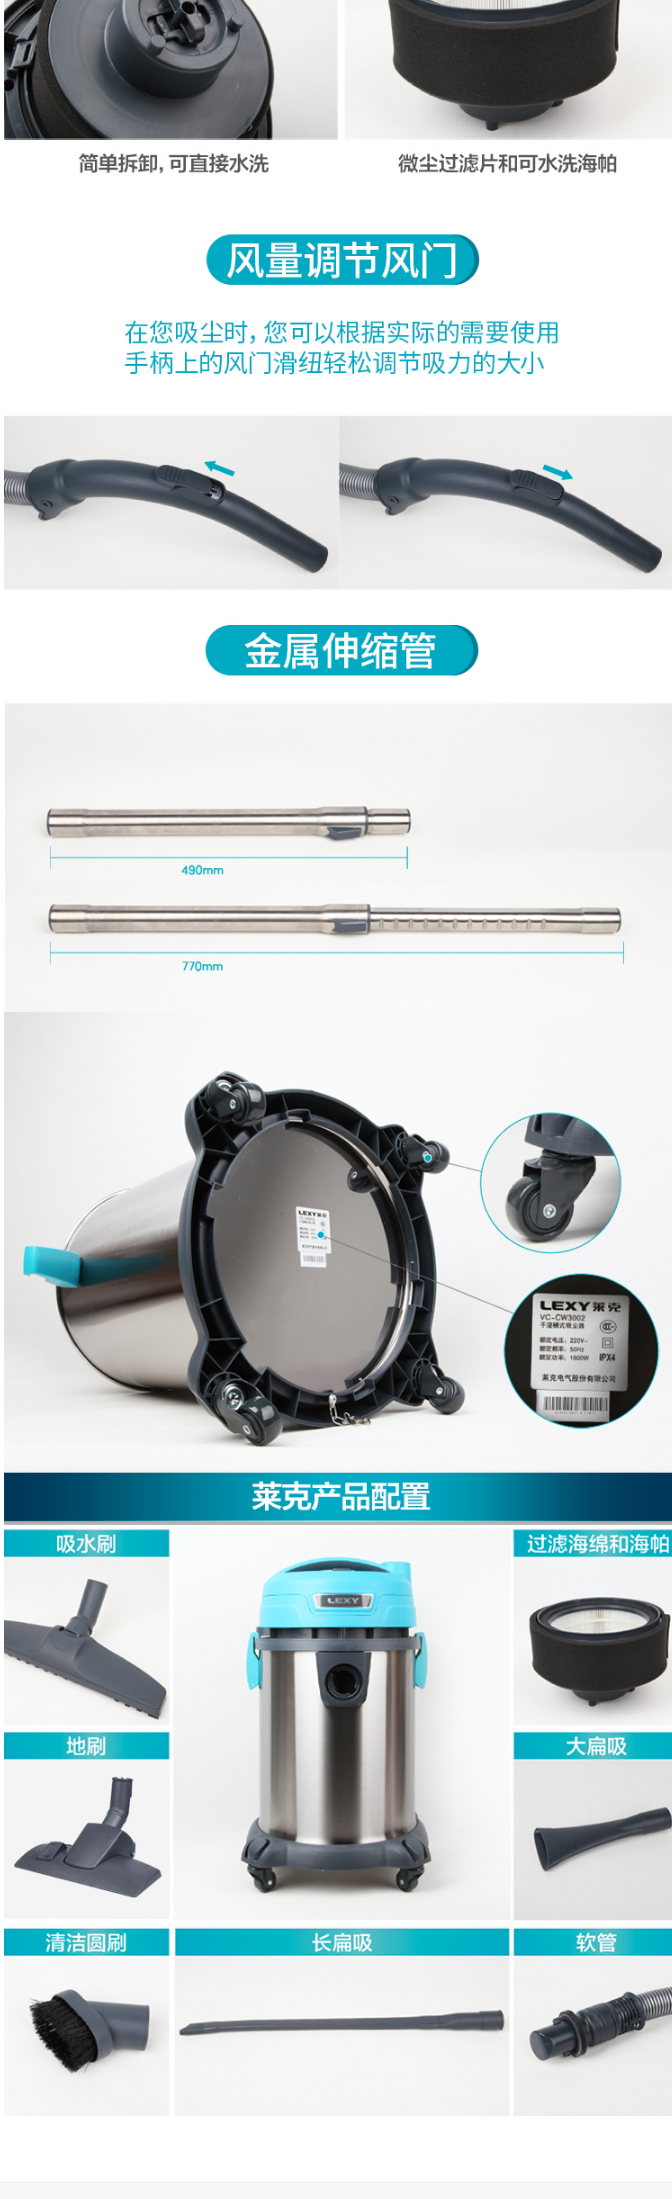 【莱克VC-CW3002】莱克吸尘器VC-CW3002-商用桶式干湿两用吸尘器【行情-报价-价格-评_04.png